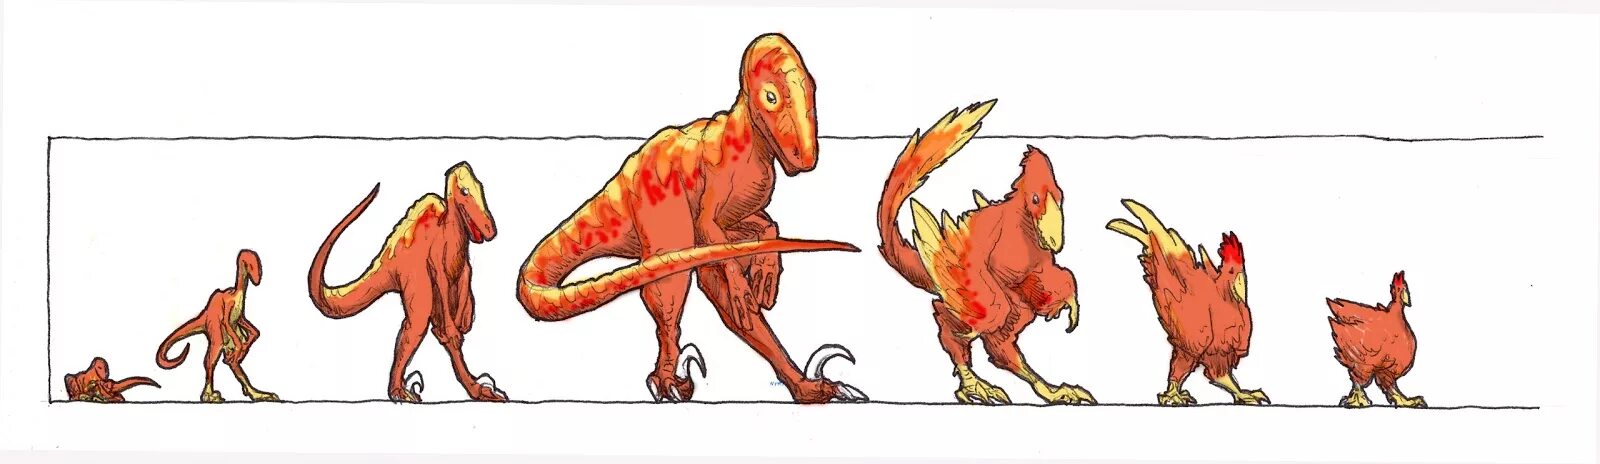 Ближайший родственник динозавра. Тиранозавр курица Эволюция. Тираннозавр предок курицы. Курица потомок динозавров. Джек Хорнер Курозавр.